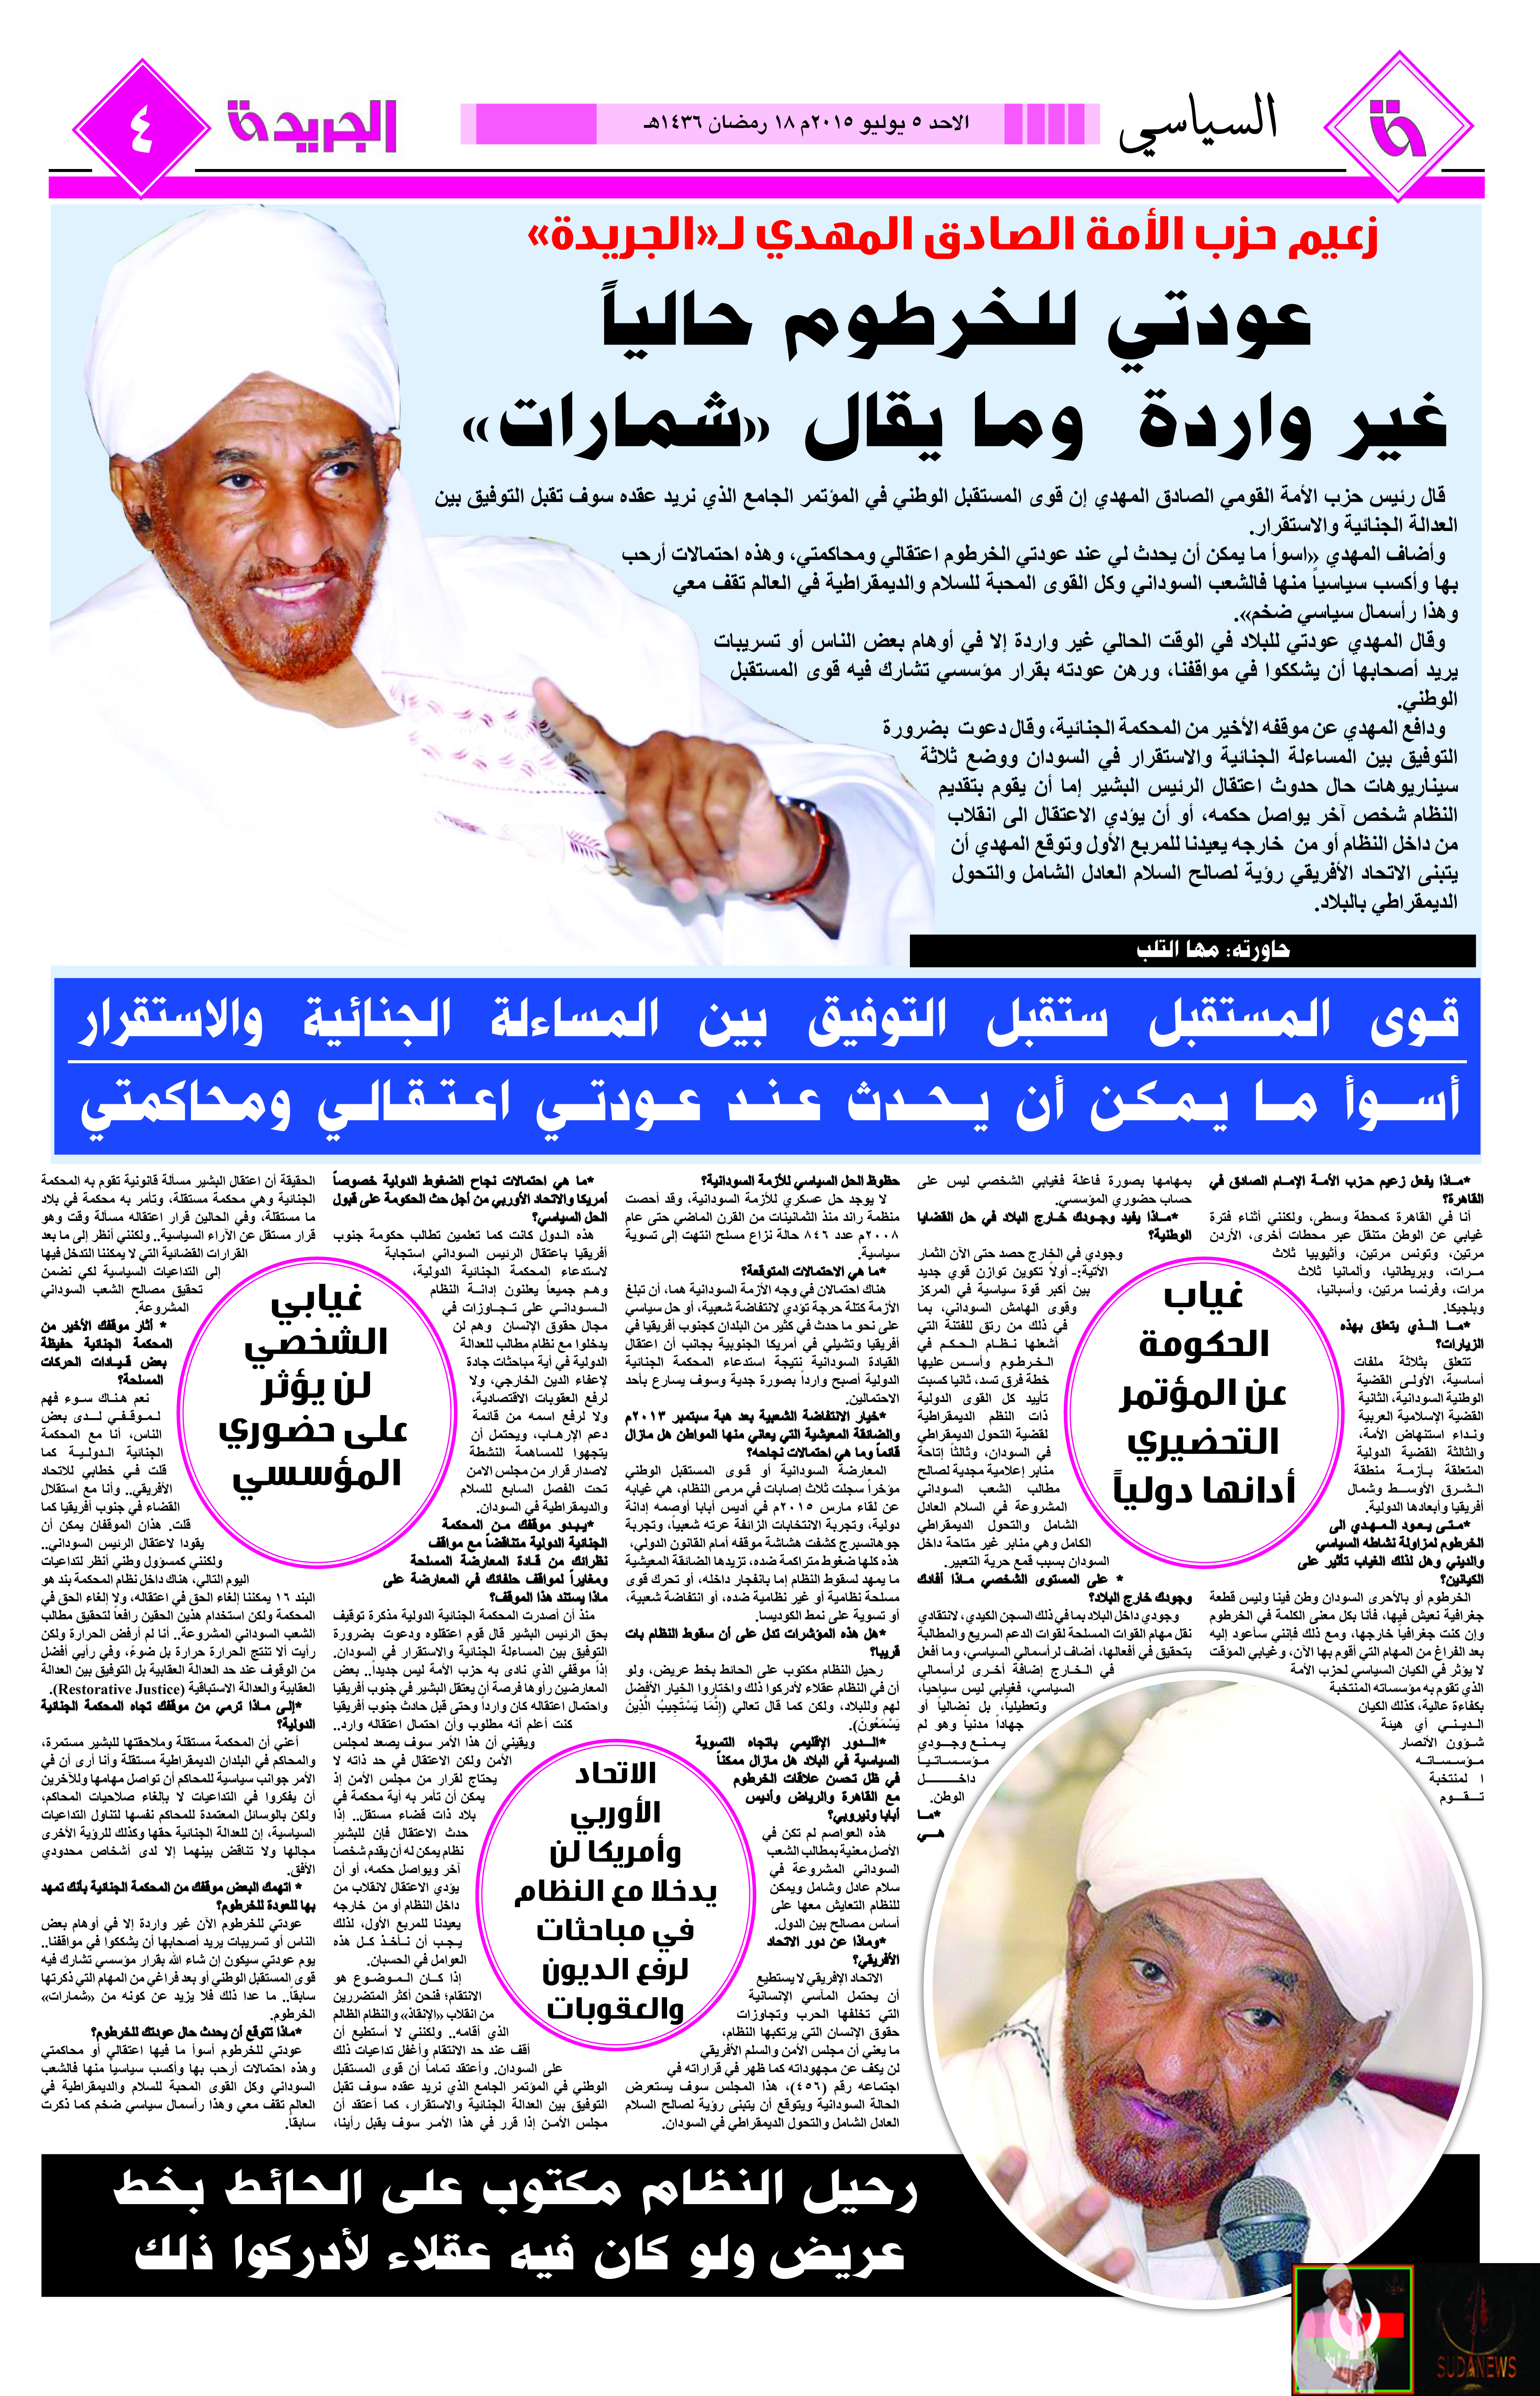 حوار مع الحبيب الإمام اصادق المهدي في الجريدة 5 يوليو 2015 الموافق 18 رمضان 1436 - العدد 1457